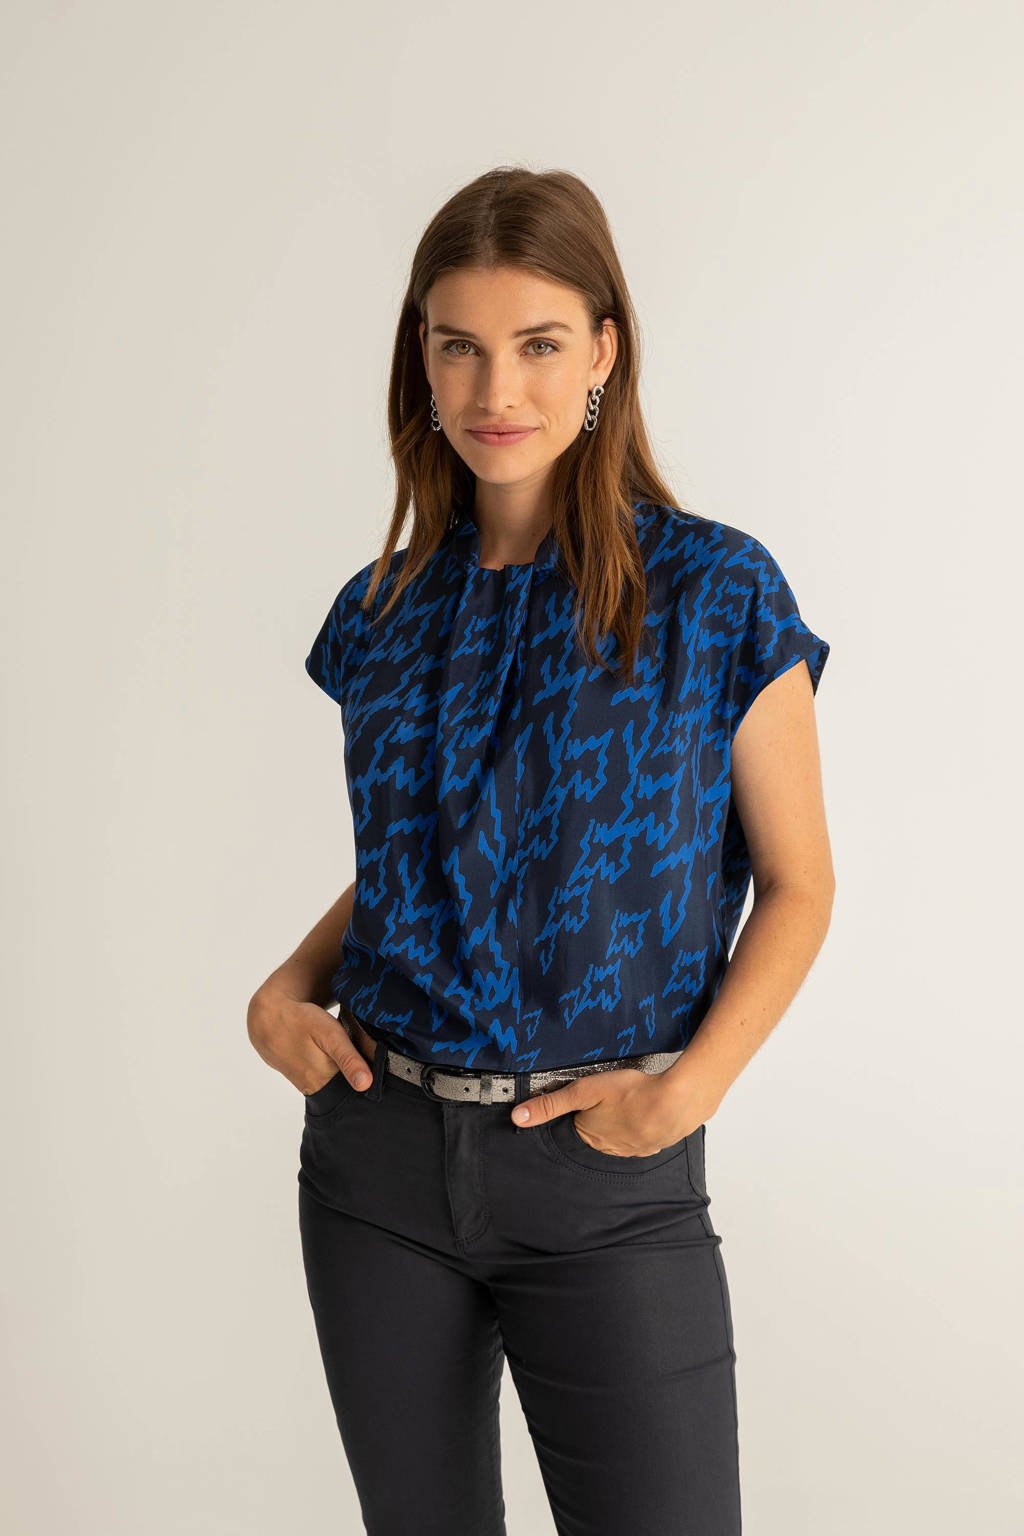 Blauwe dames Expresso top van rayon met all over print, korte mouwen, strikkraag en striksluiting